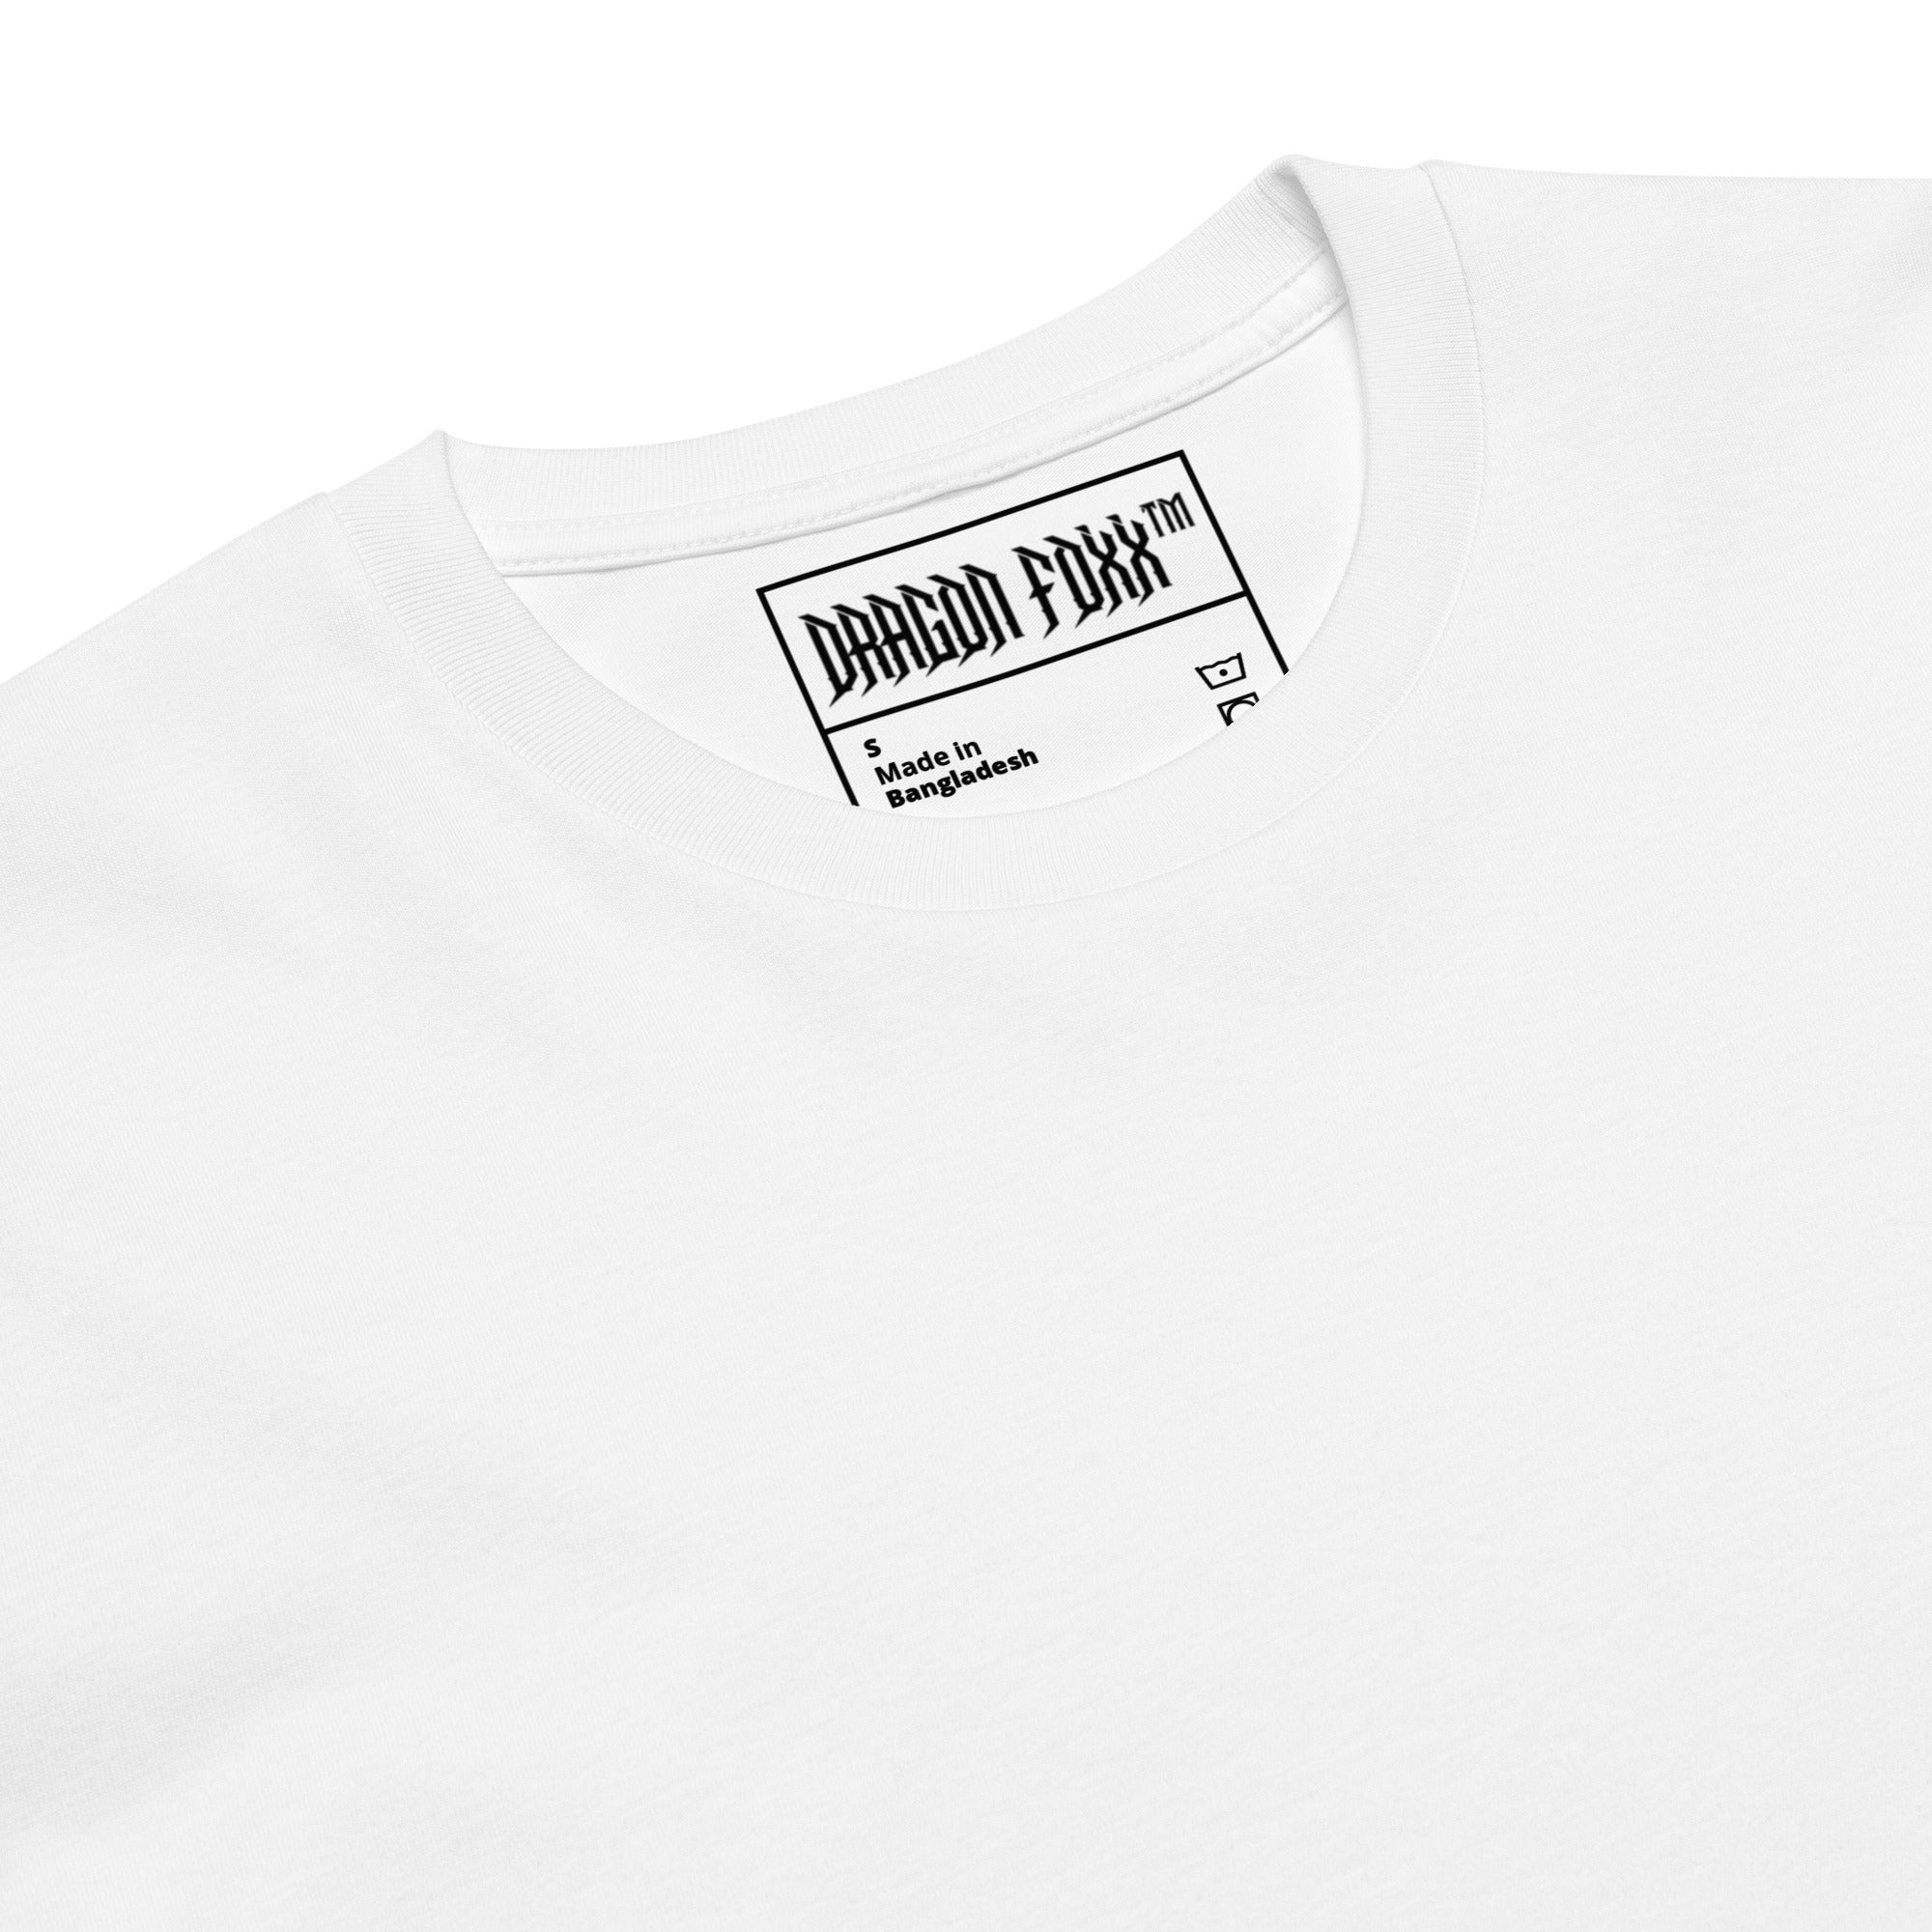 Ethereal - Women's White Premium T-shirt - Women's T-shirt - DRAGON FOXX™ - Ethereal - Women's White Premium T-shirt - 4578534_18793 - S - White - 100% Combed Cotton - Dragon Foxx™ - Dragon Foxx™ Ethereal - Women's White Premium T-shirt - Ethereal